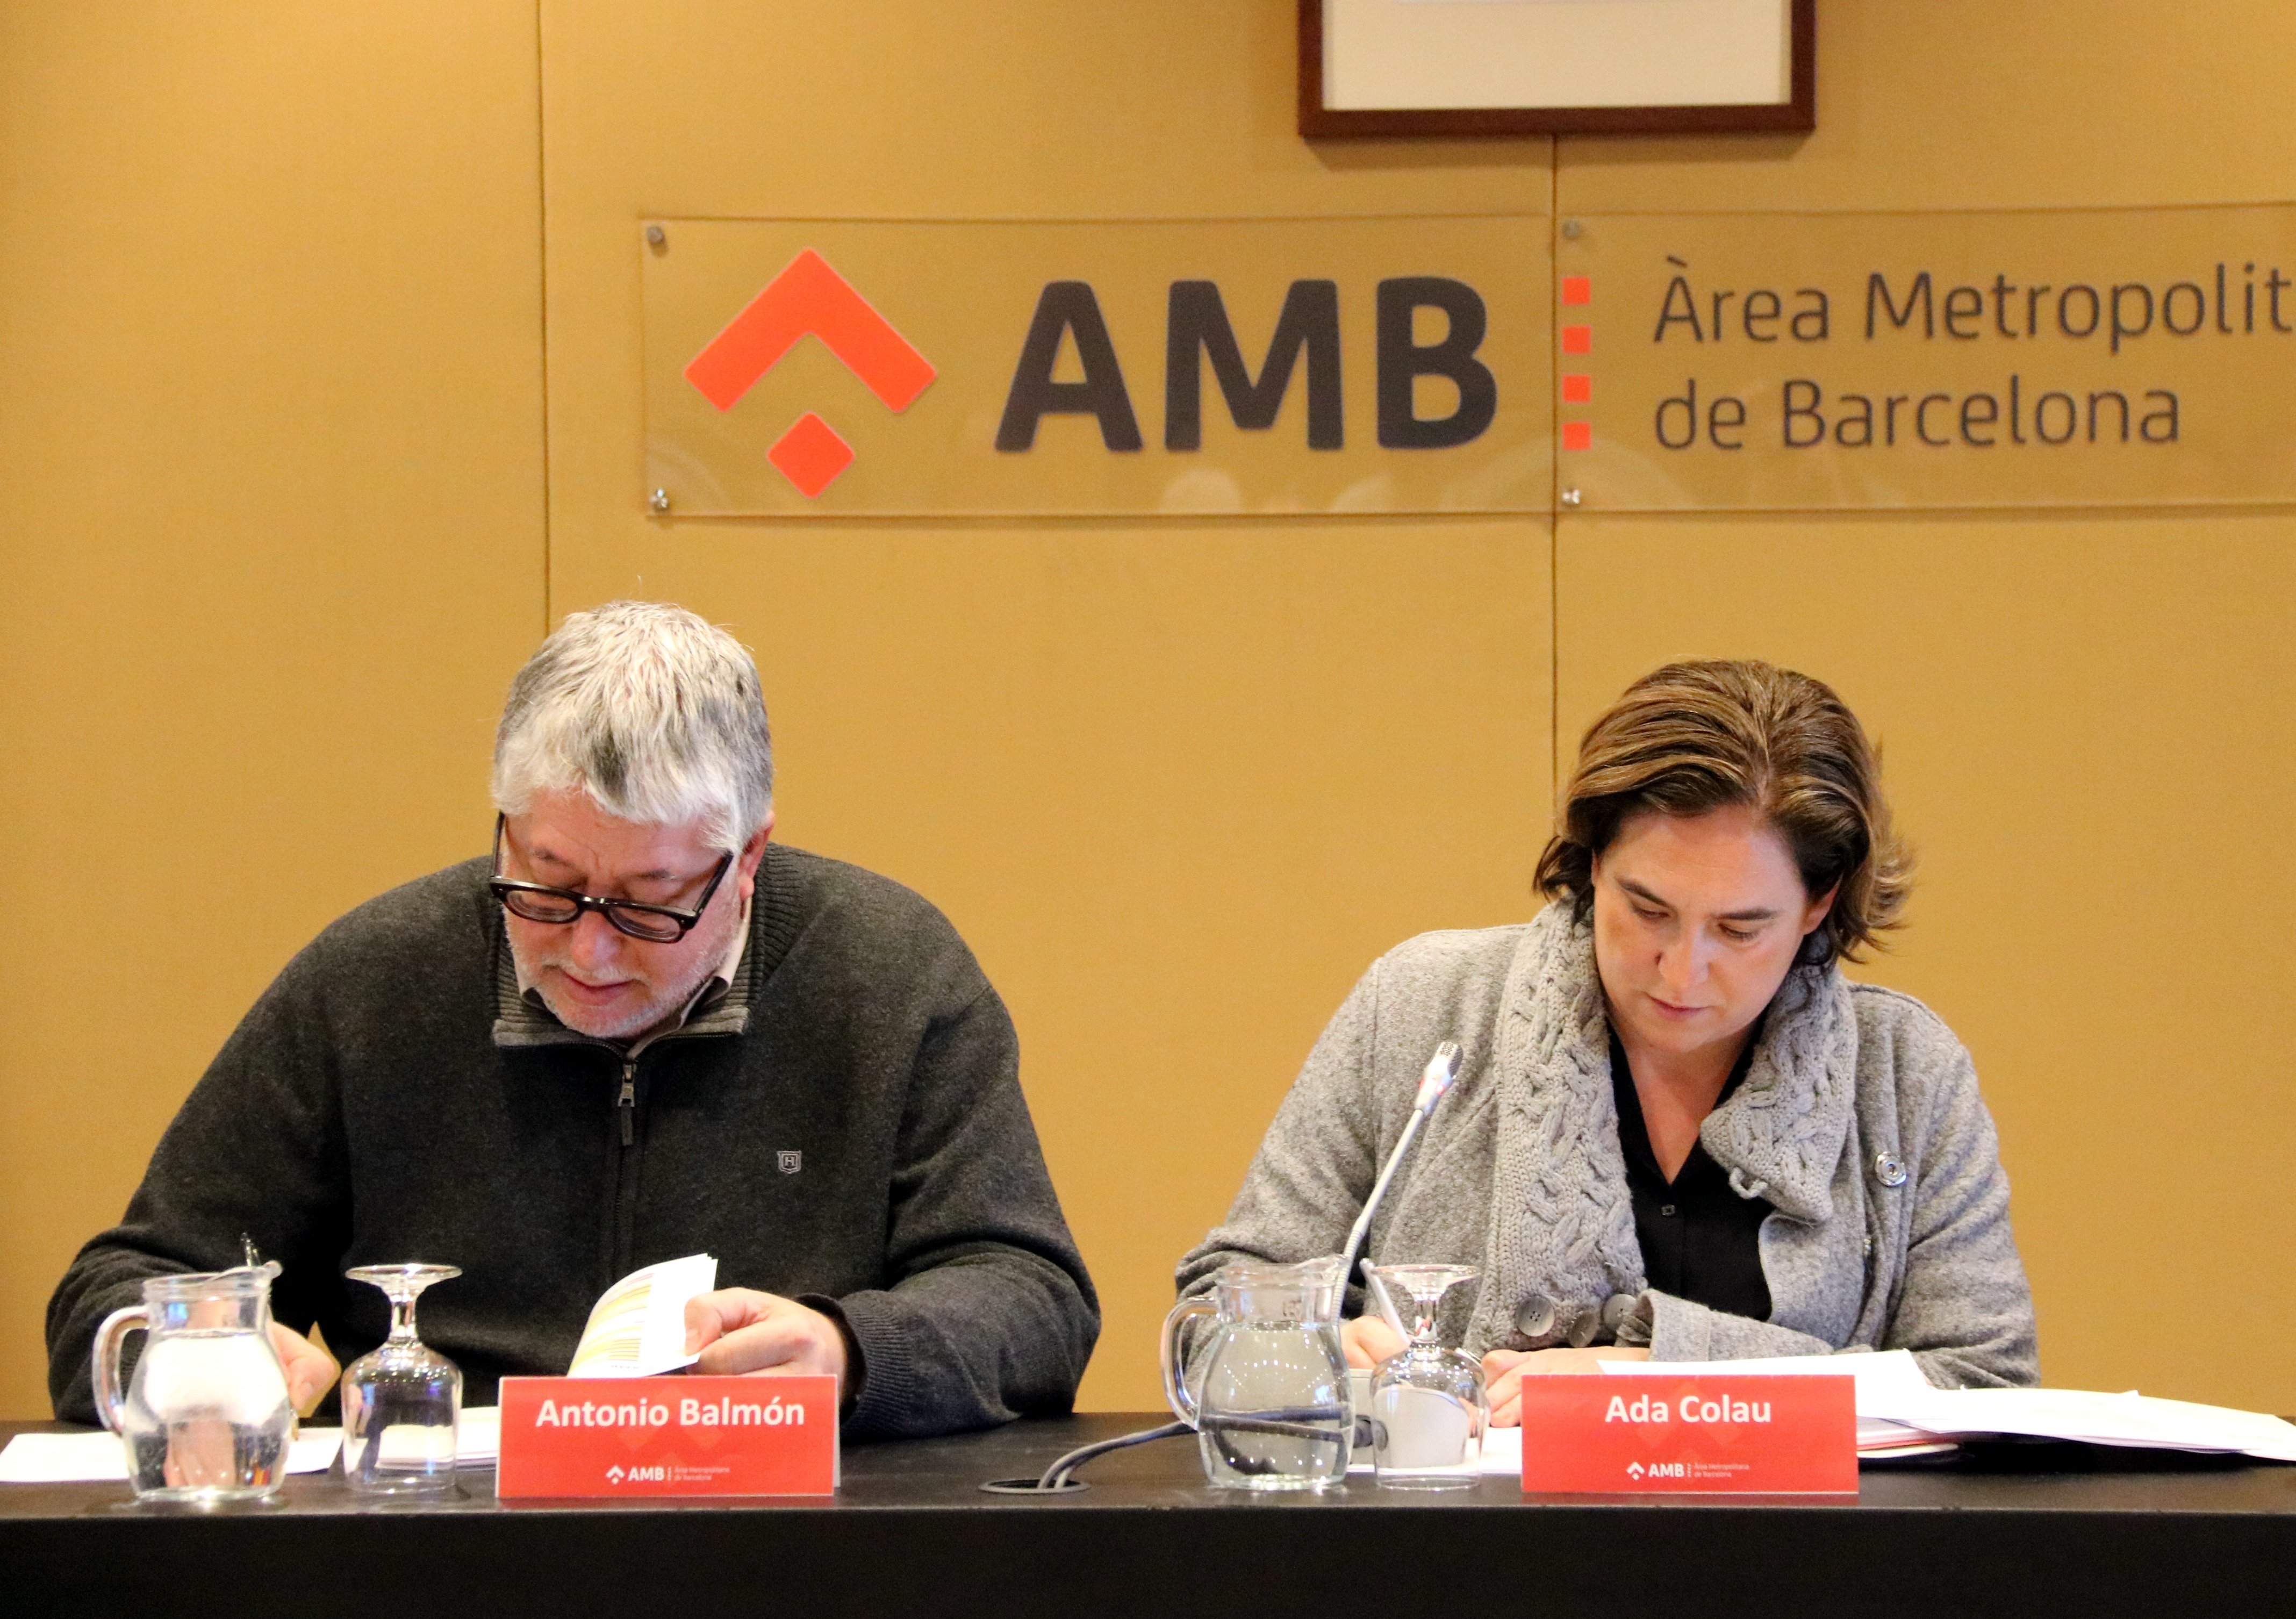 El AMB deberá pagar 15 millones a Agbar por incumplir el servicio de saneamiento